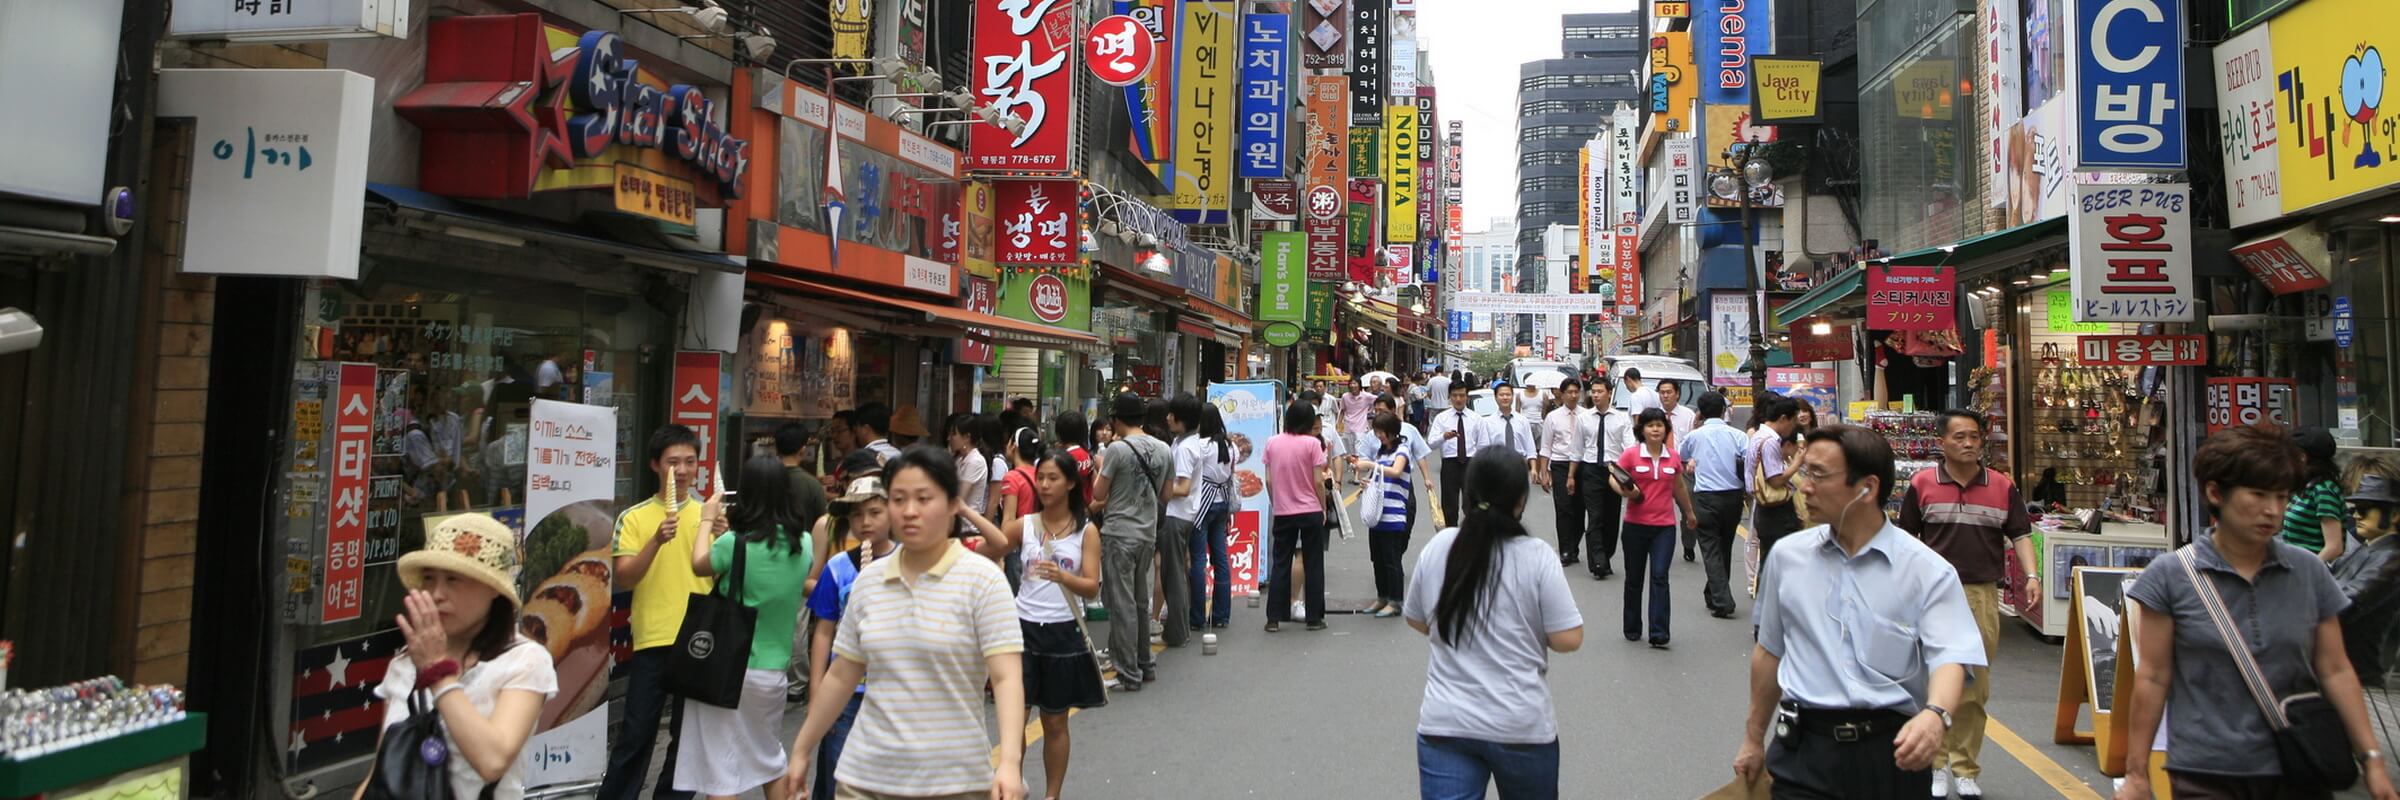 Das Einkaufsviertel Myeongdong ist einer der angesagtesten Orte in Seoul, sowohl unter Einheimischen als auch unter Touristen.